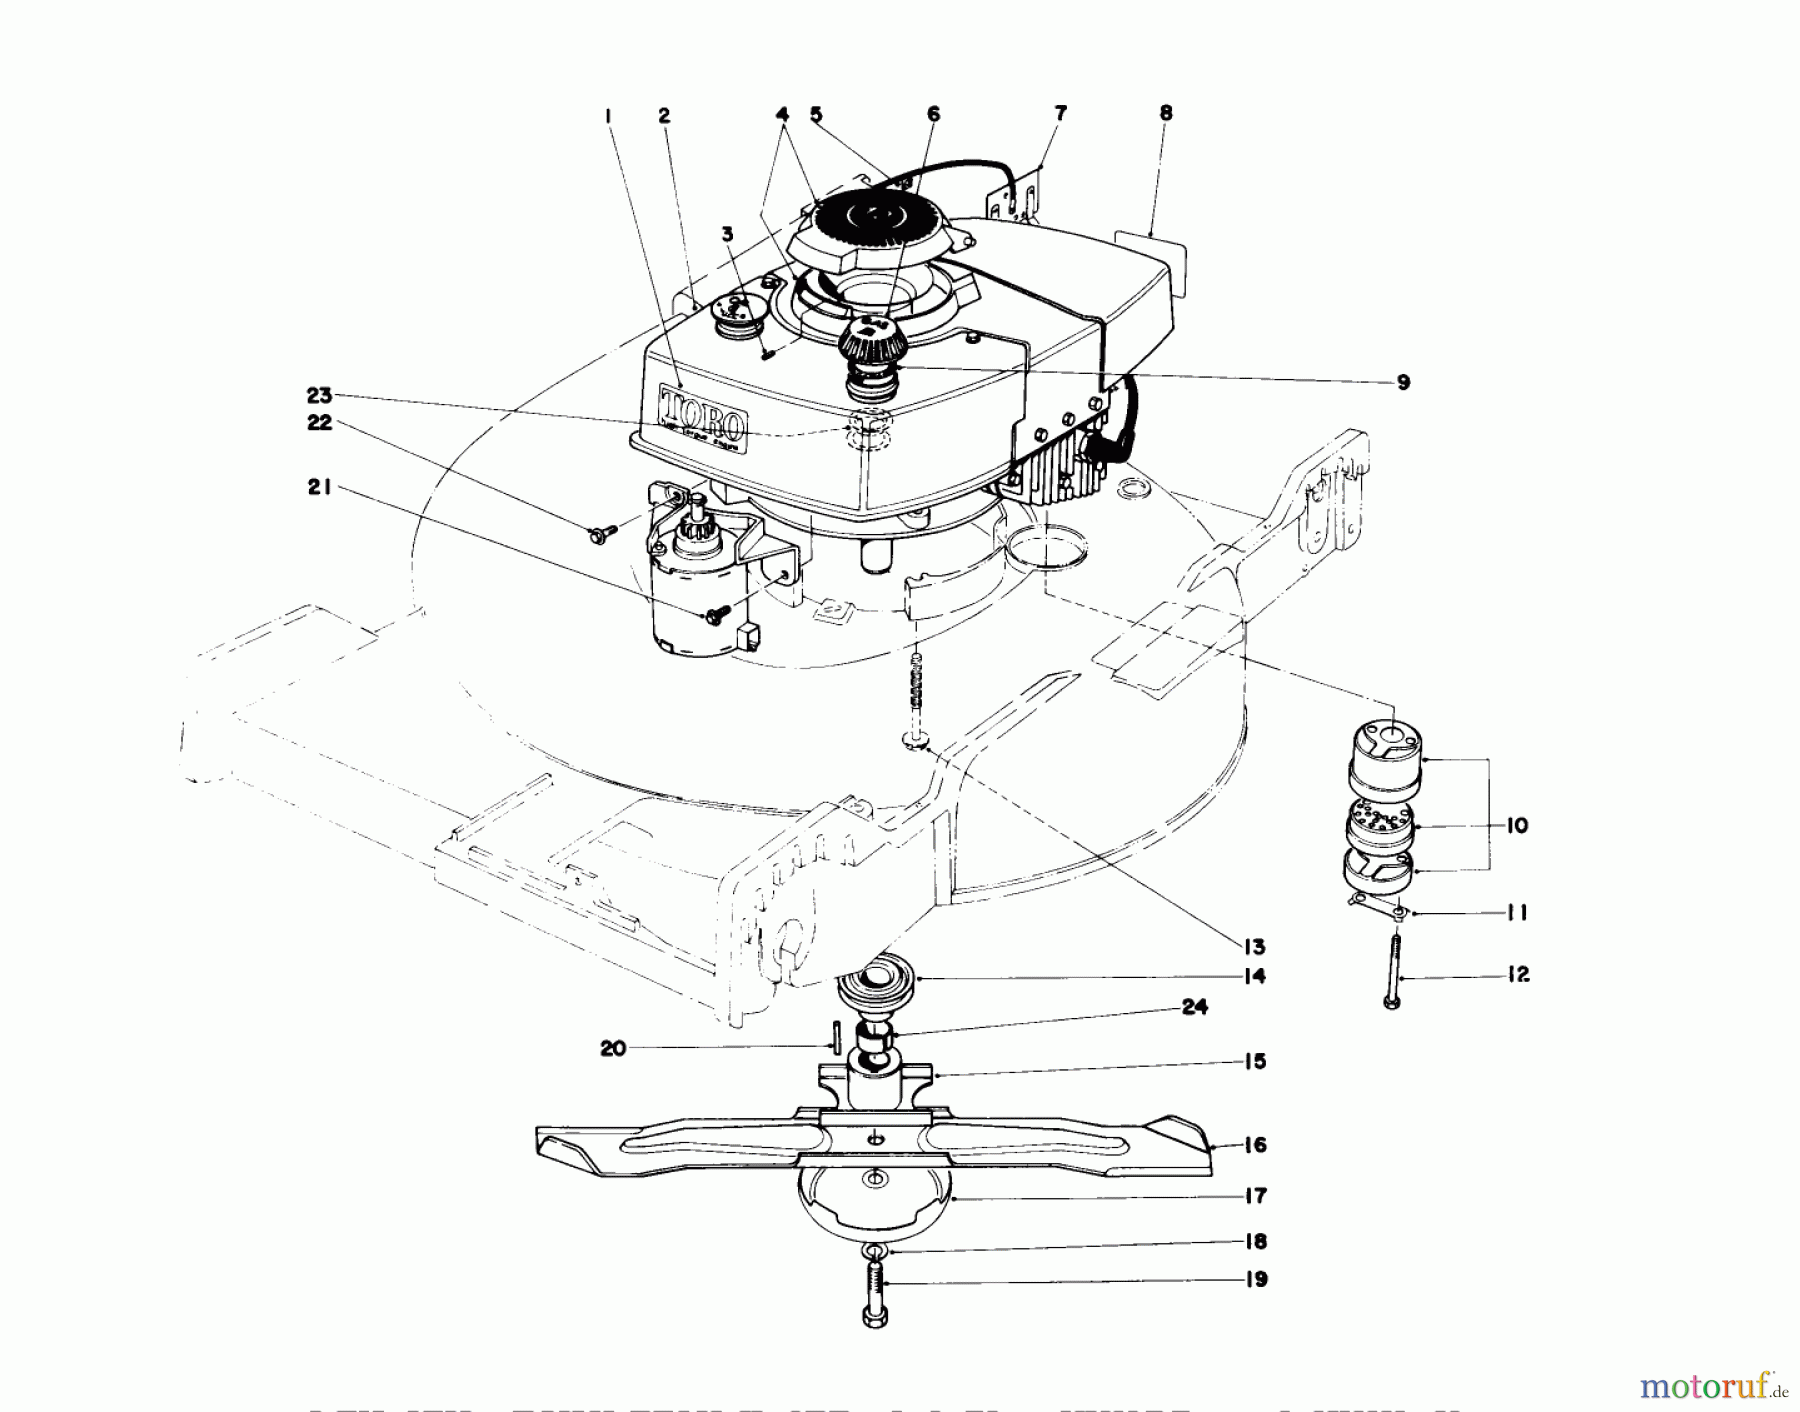  Toro Neu Mowers, Walk-Behind Seite 1 20517 - Toro Lawnmower, 1977 (7000001-7999999) ENGINE ASSEMBLY (MODEL NO. 20644 AND 20657)